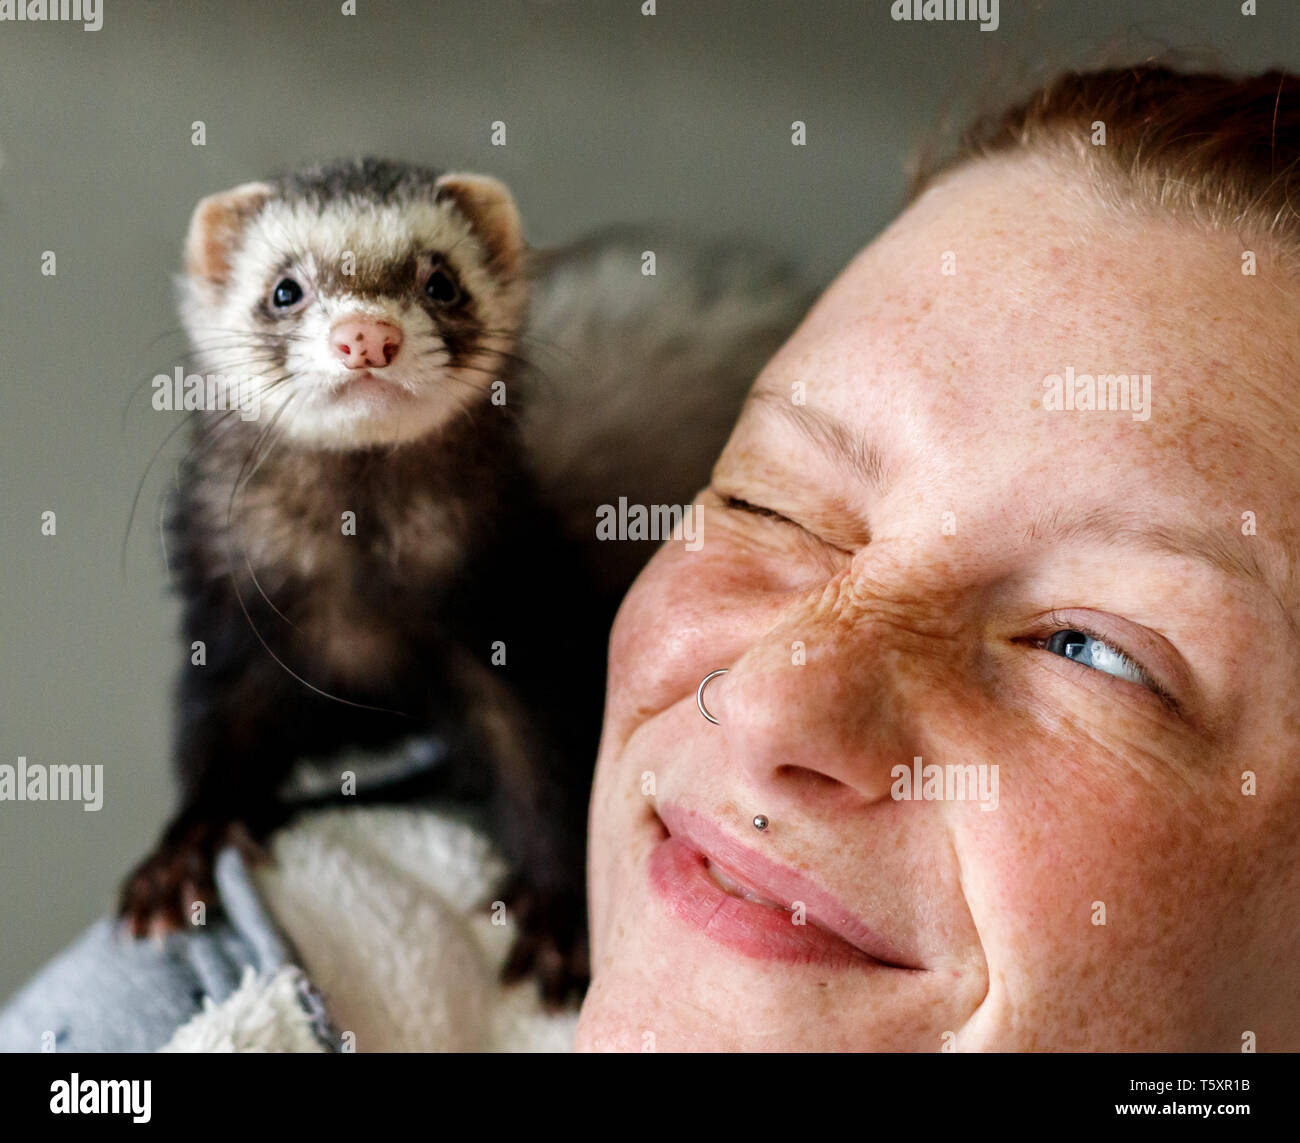 Jeune fille tête rouge attrayante avec rousseur smiling at little ferret animal sur son épaule Banque D'Images